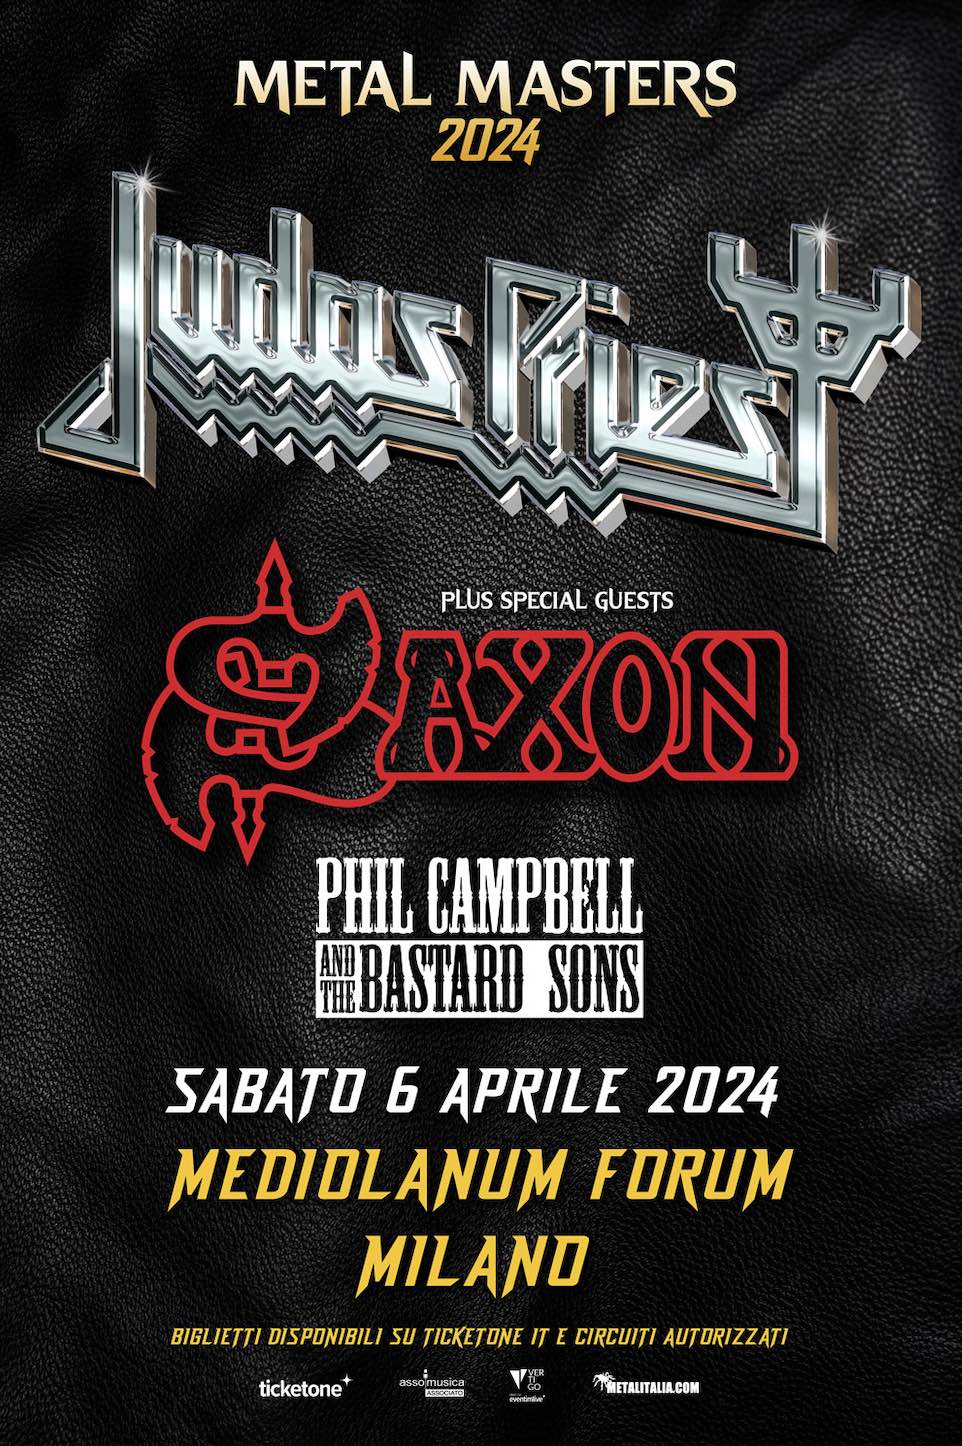 Judas Priest Tour 2024 Vertigo Concerti